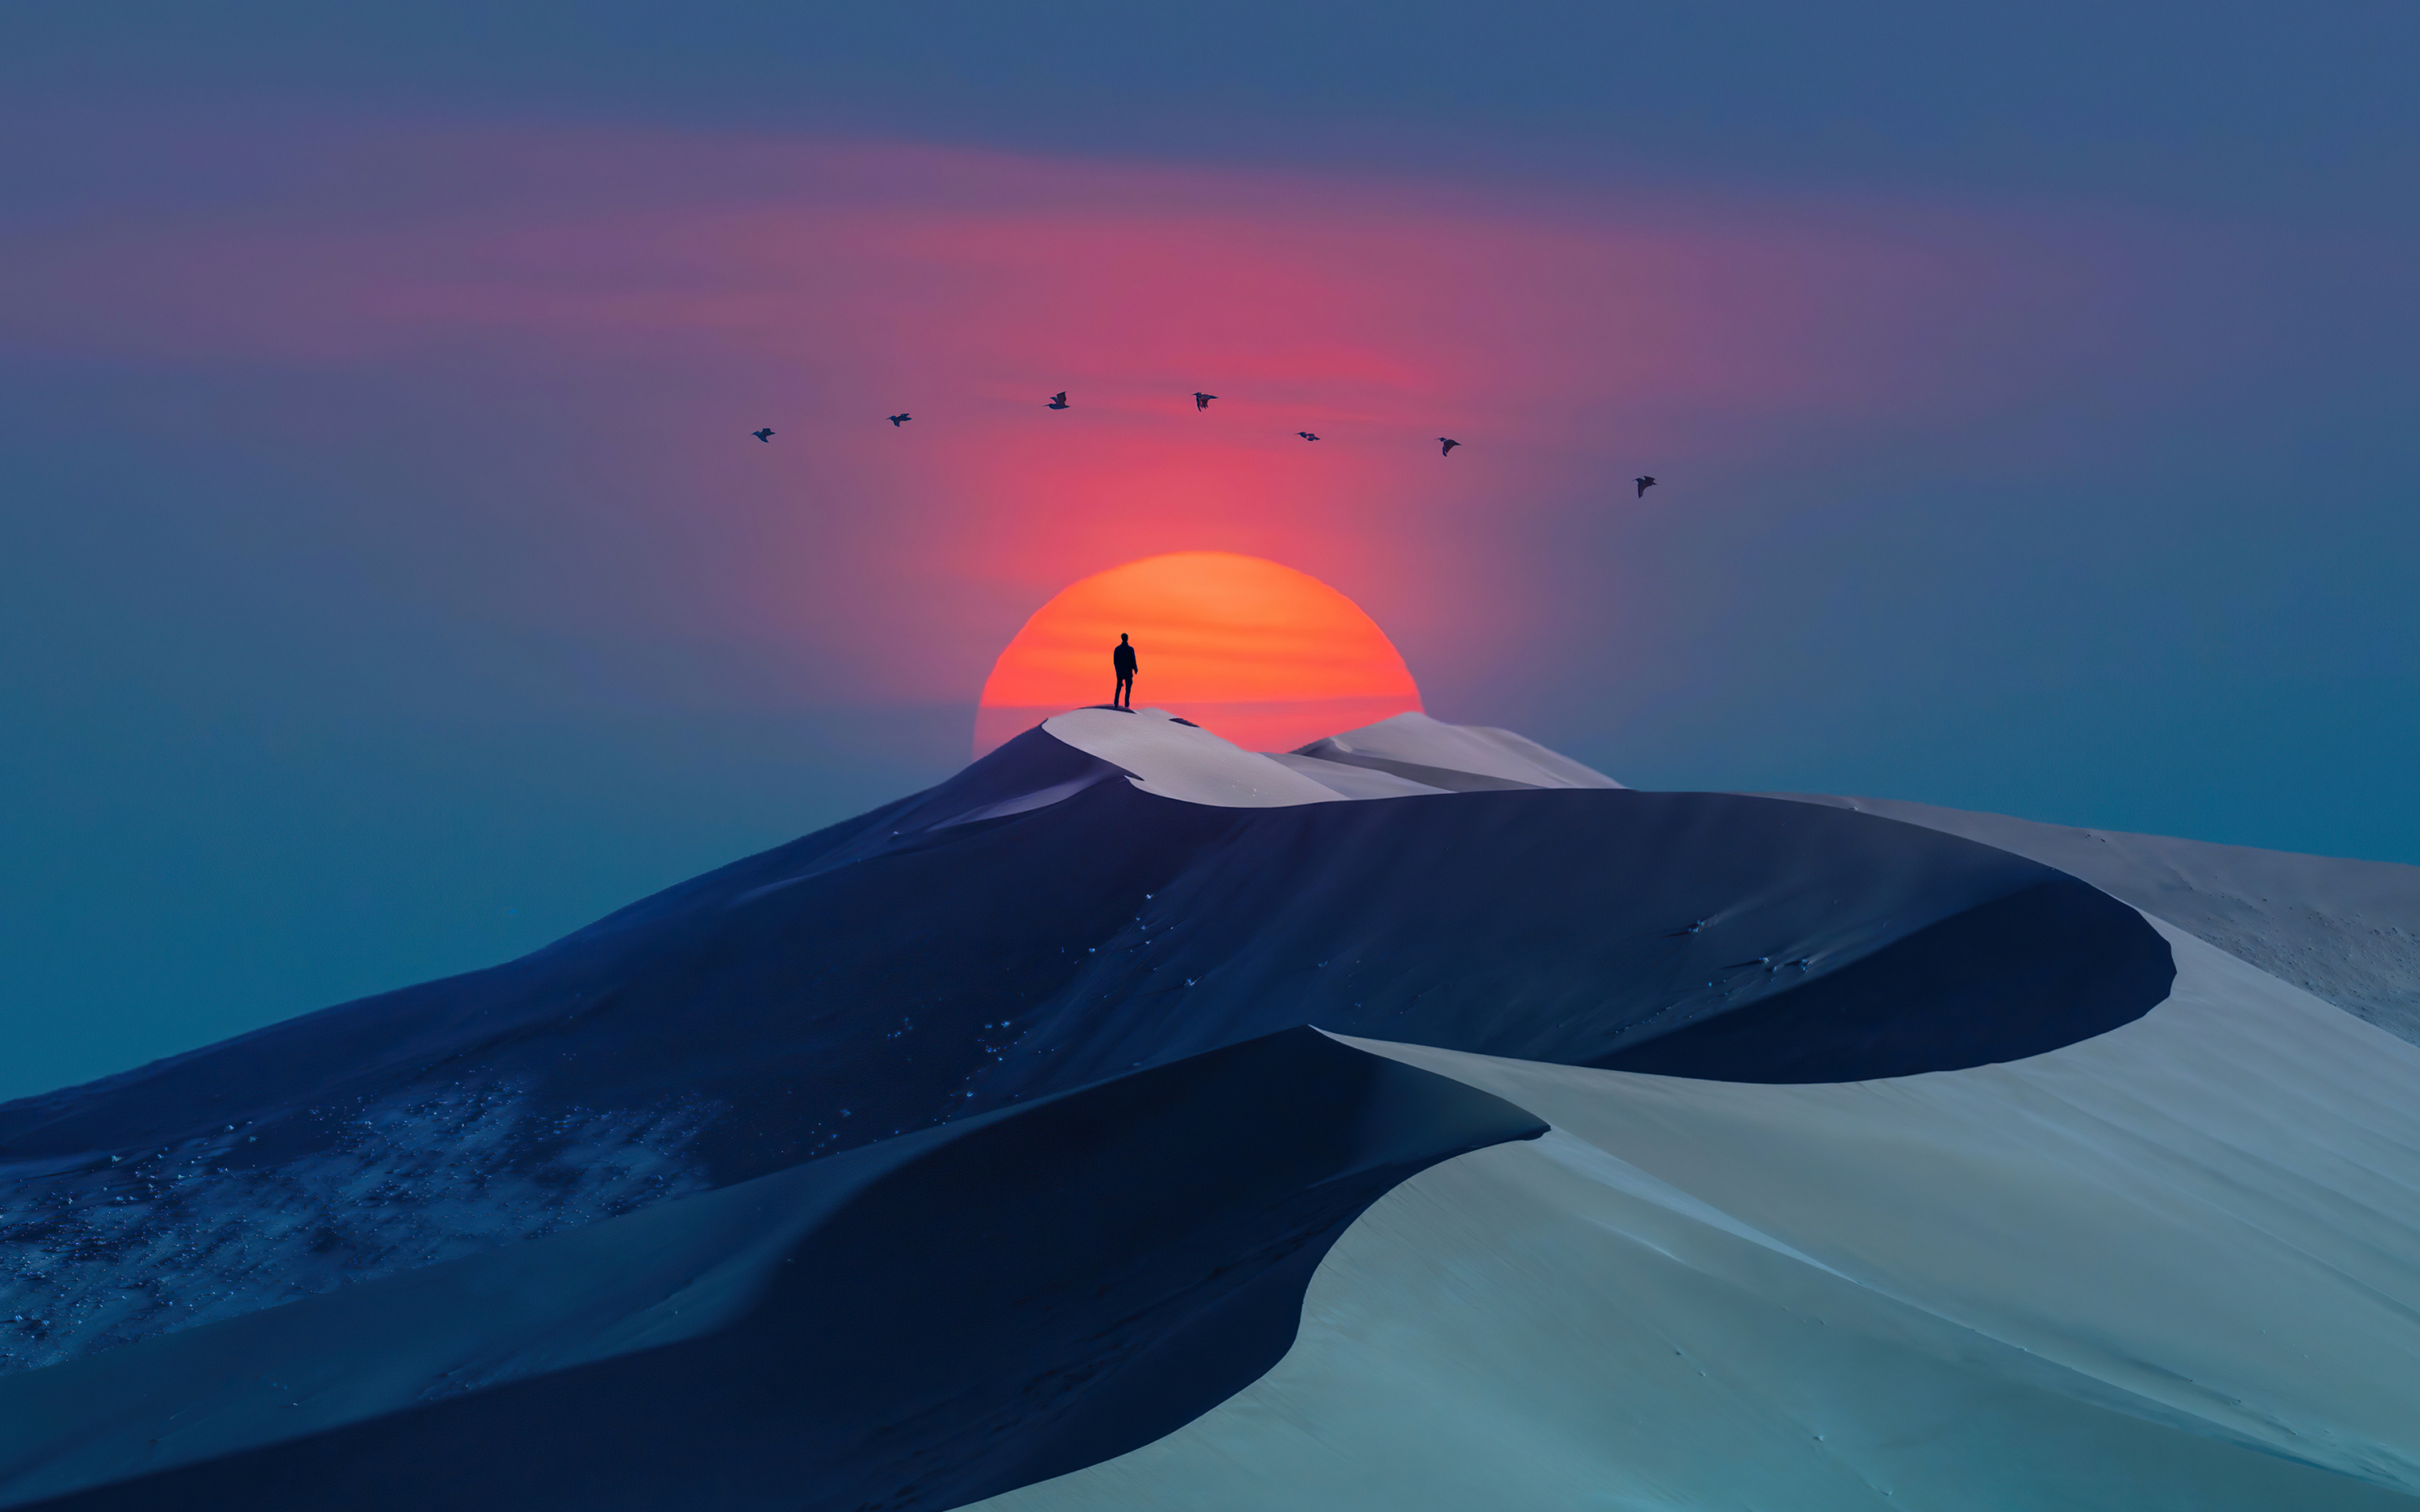 Birds over desert, sunset & man, silhouette, minimal art, 2880x1800 wallpaper